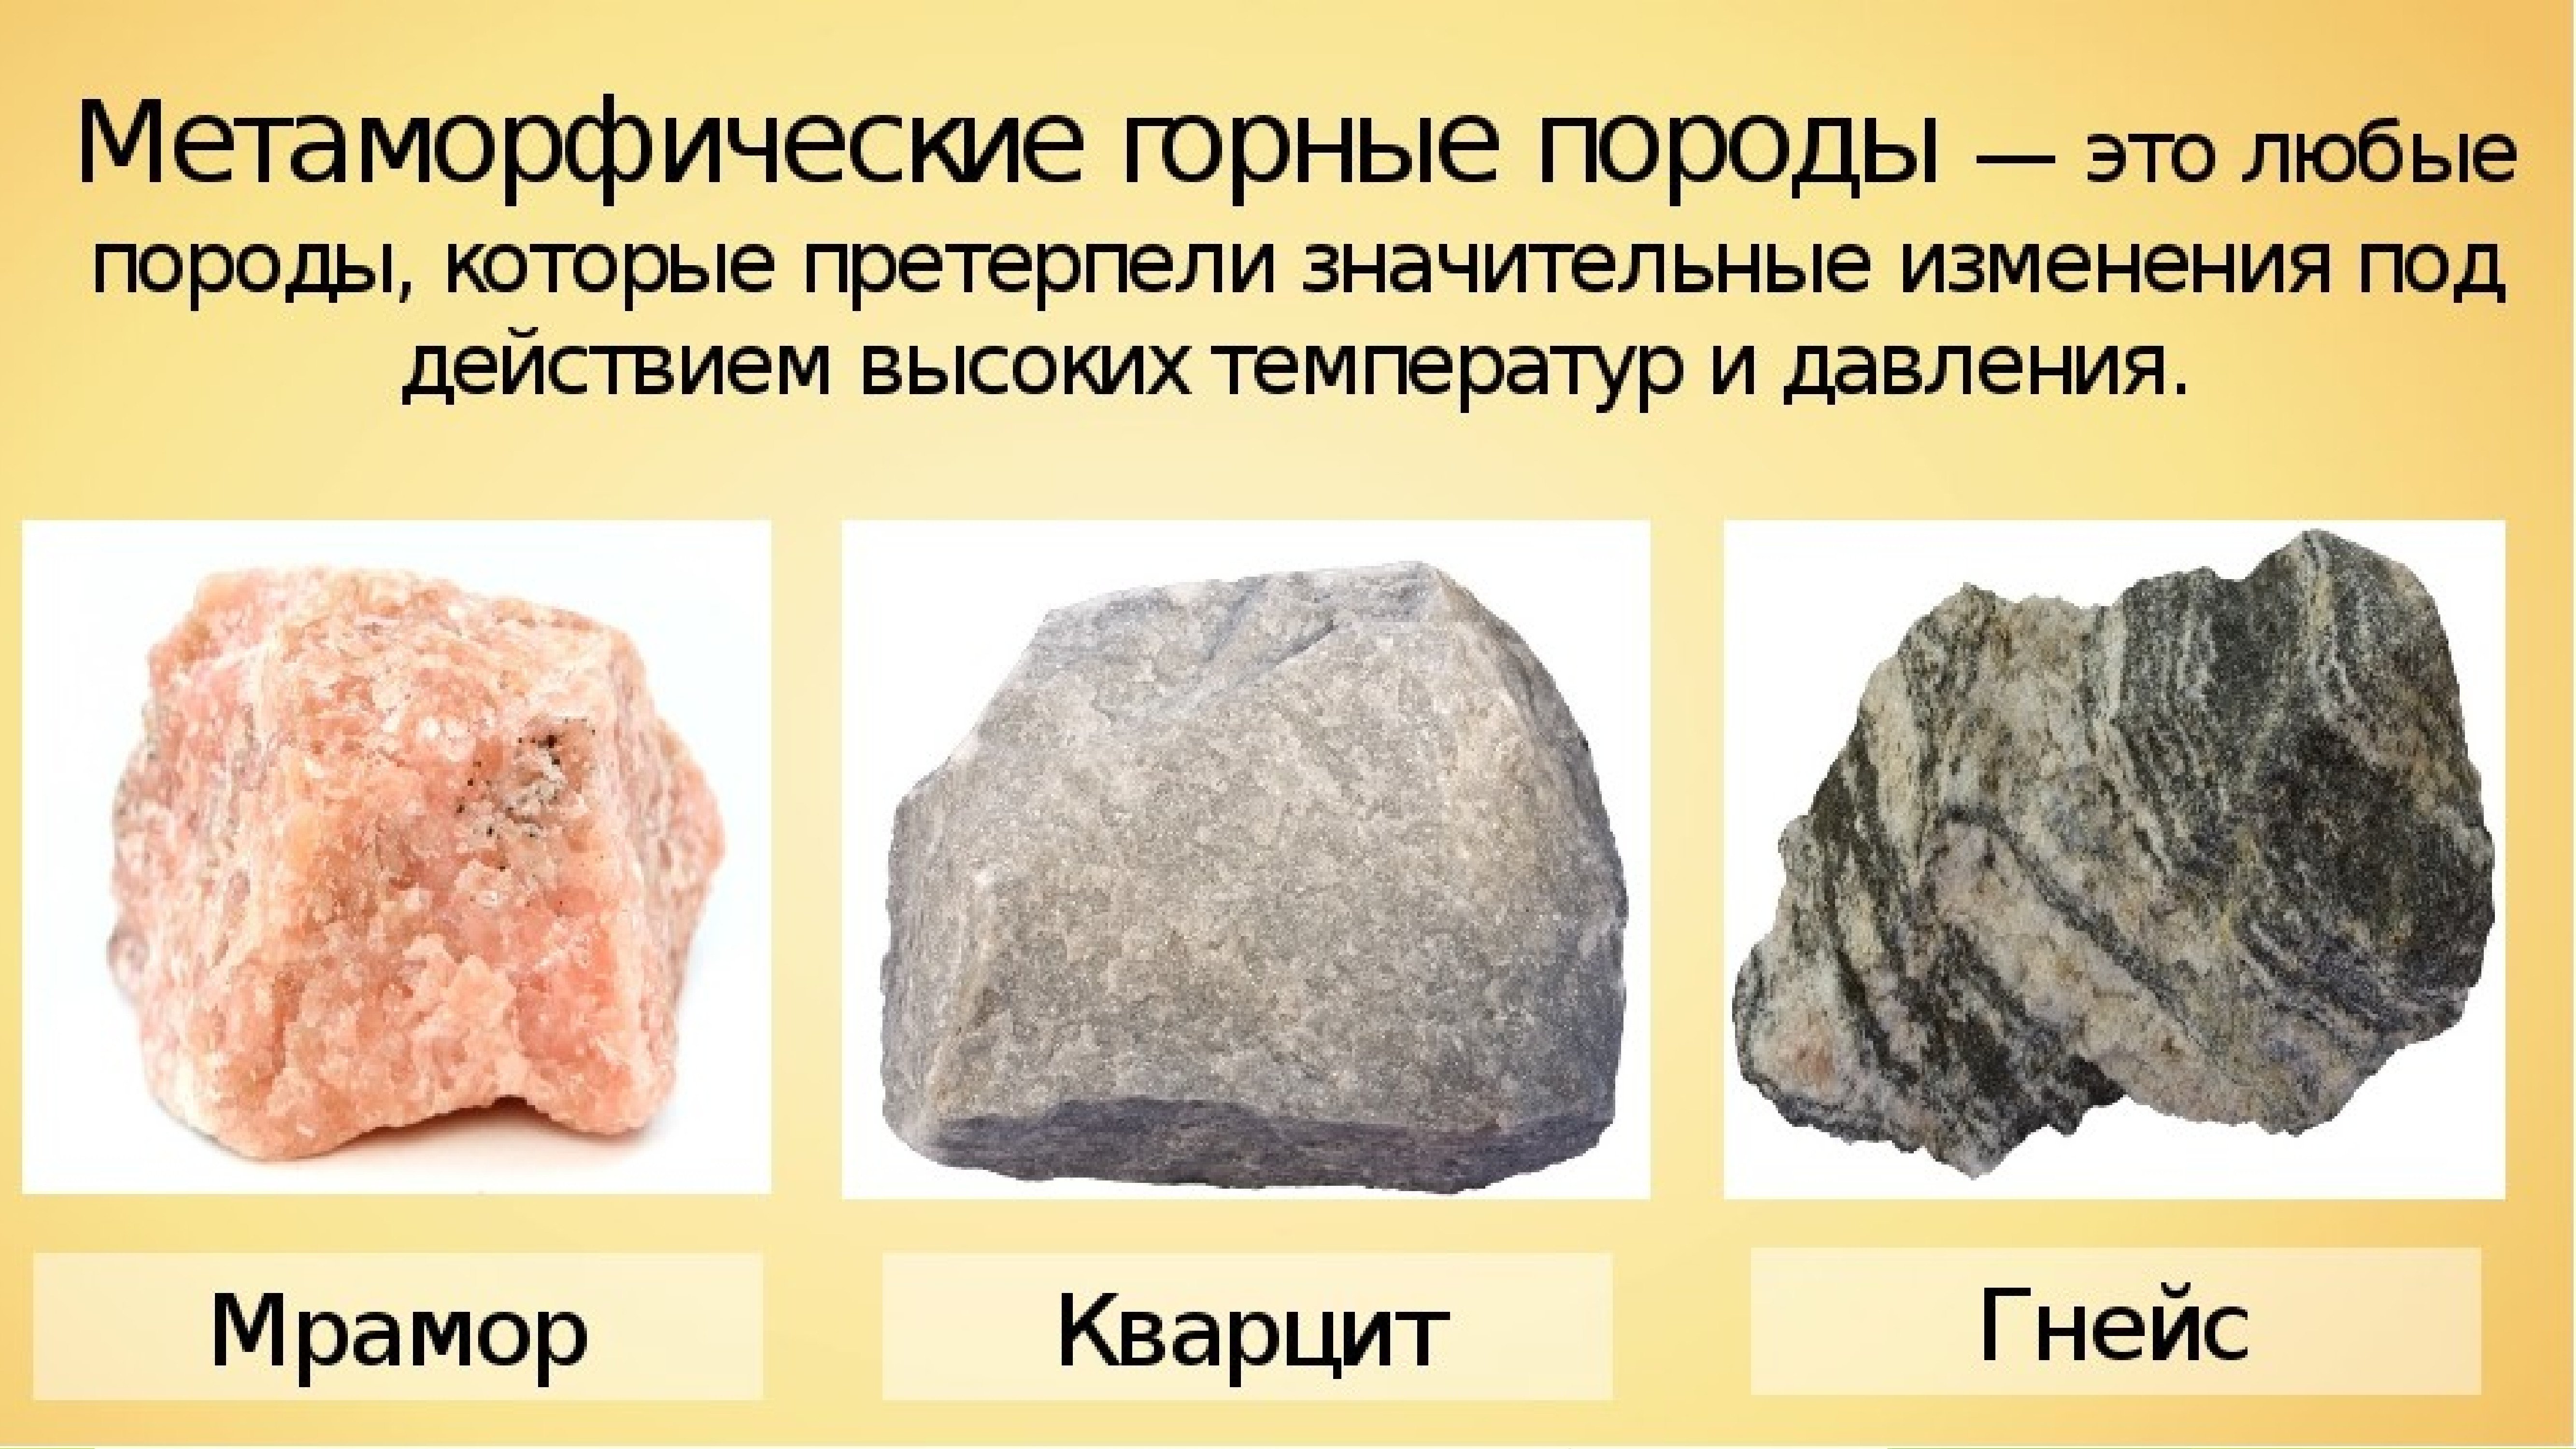 3 основные горные породы. Метамлорфическиегорные породы минералов. Горные породы метаморфические породы. Метаморфические образовавшиеся из магматических пород. Метаморфические горные породы камни.